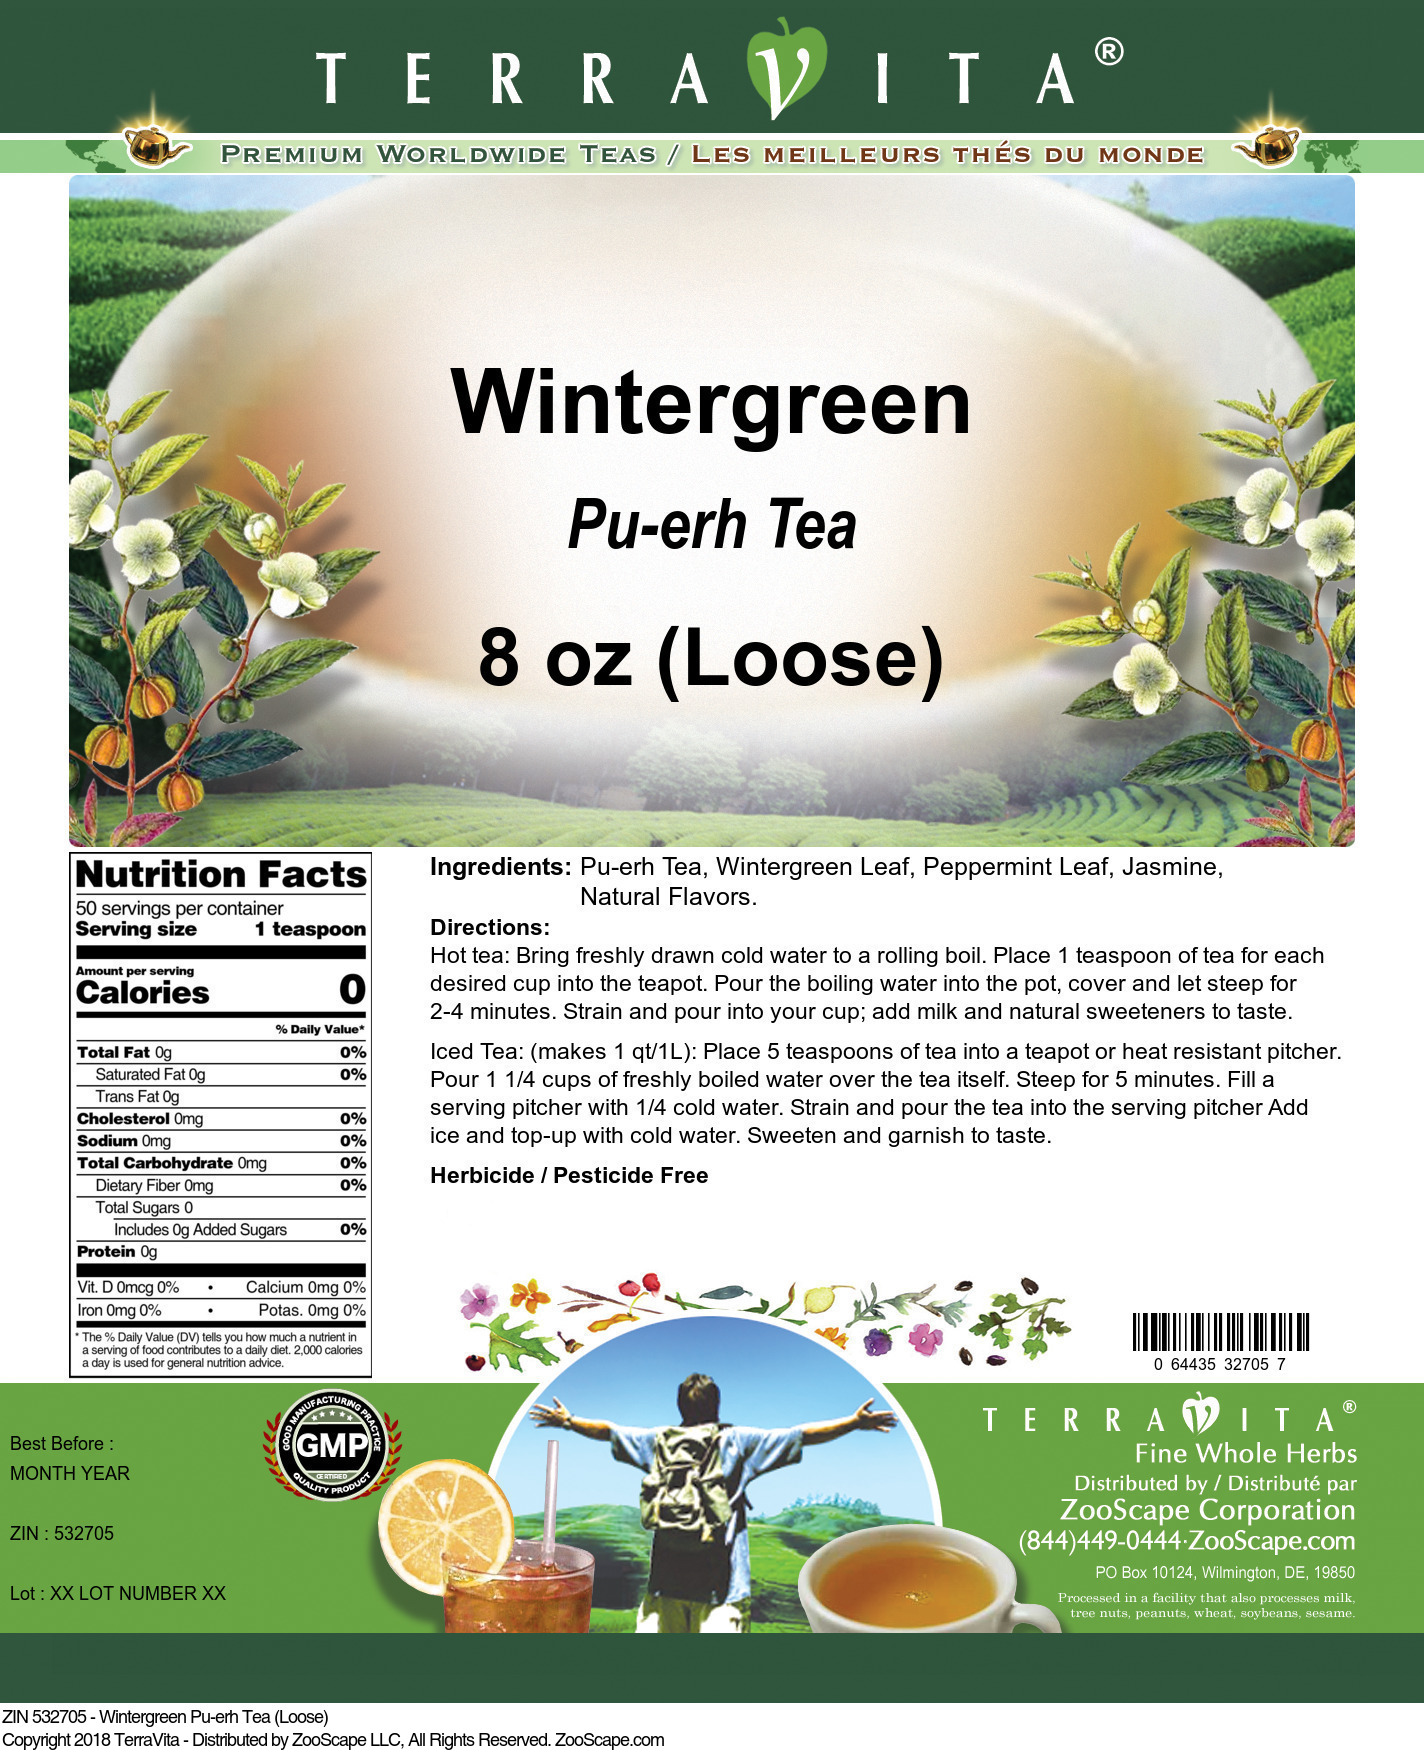 Wintergreen Pu-erh Tea (Loose) - Label